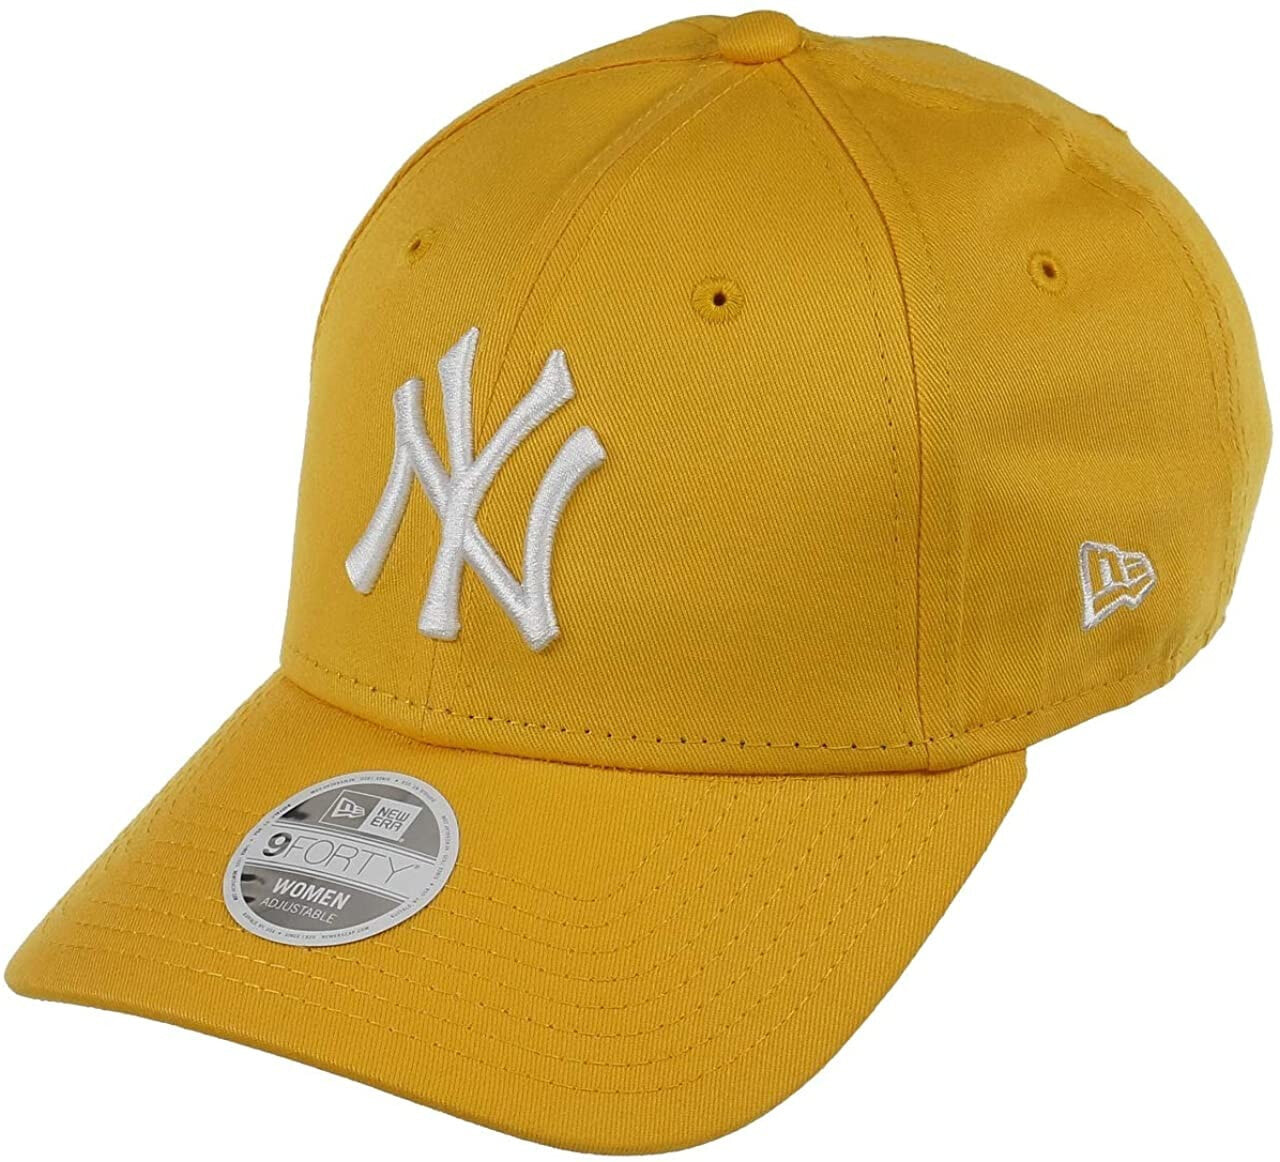 Мужская бейсболка синяя бейсбольная с логотипом New Era New York Yankees 9forty Adjustable Cap, League Essential